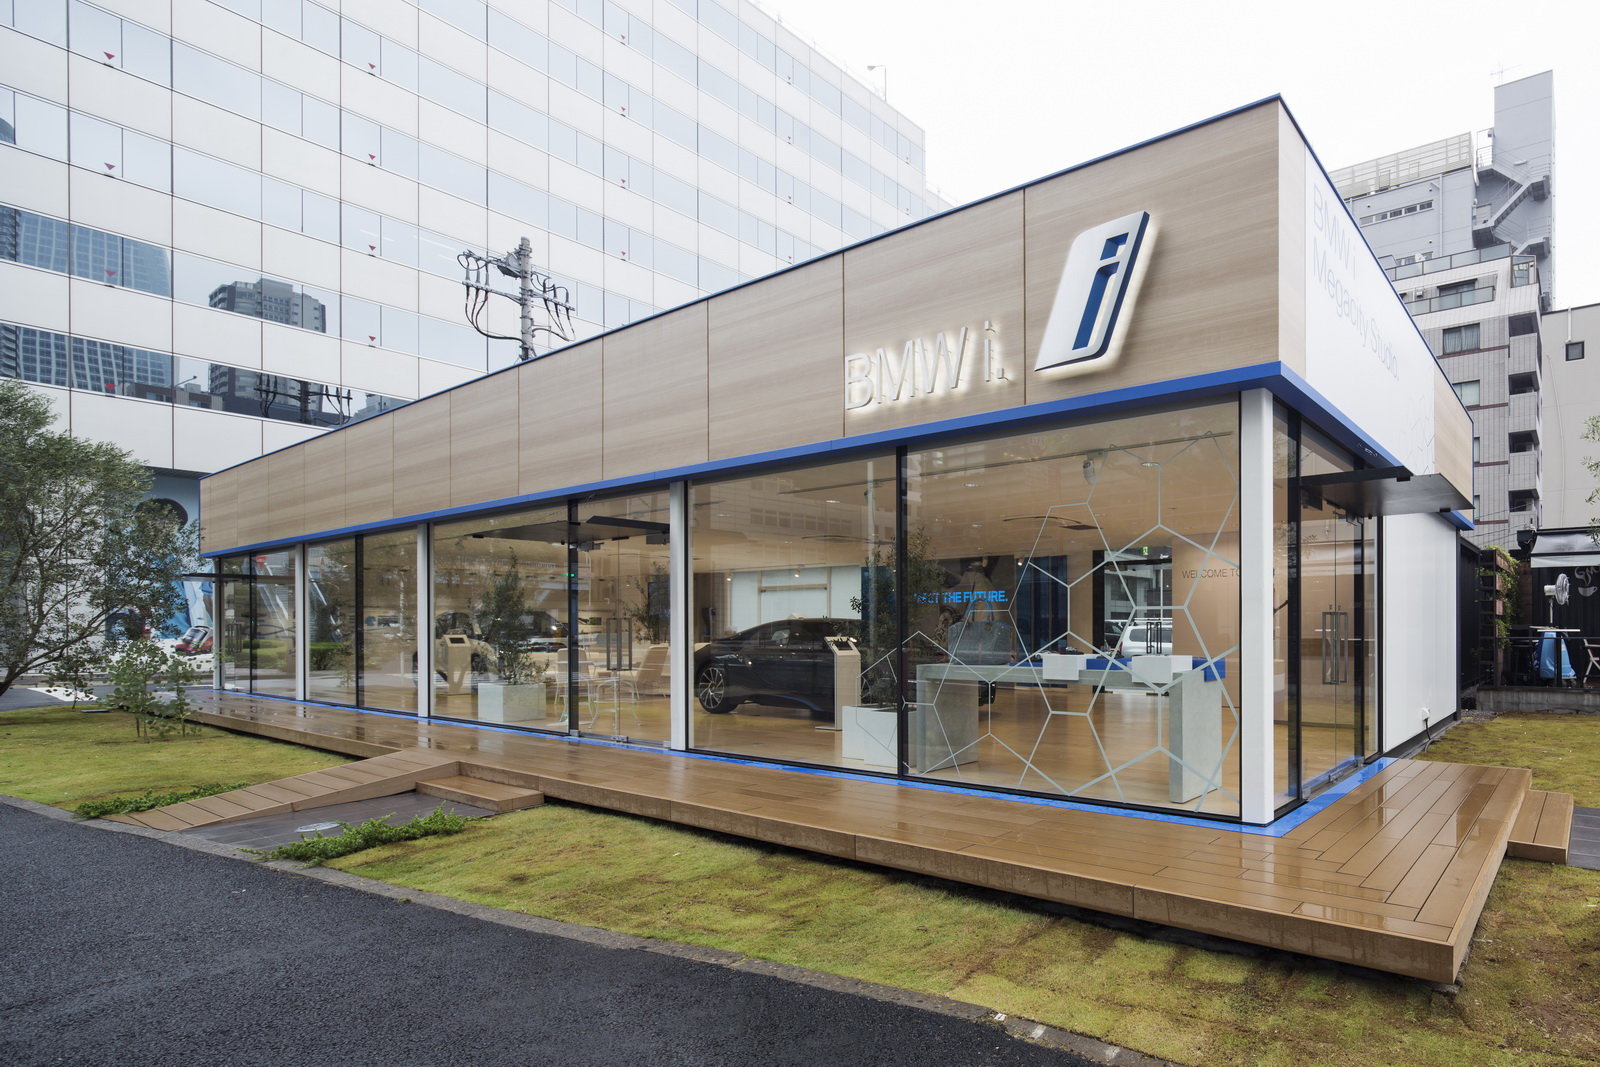 Moderní showroom BMW i v japonském Tokiu.